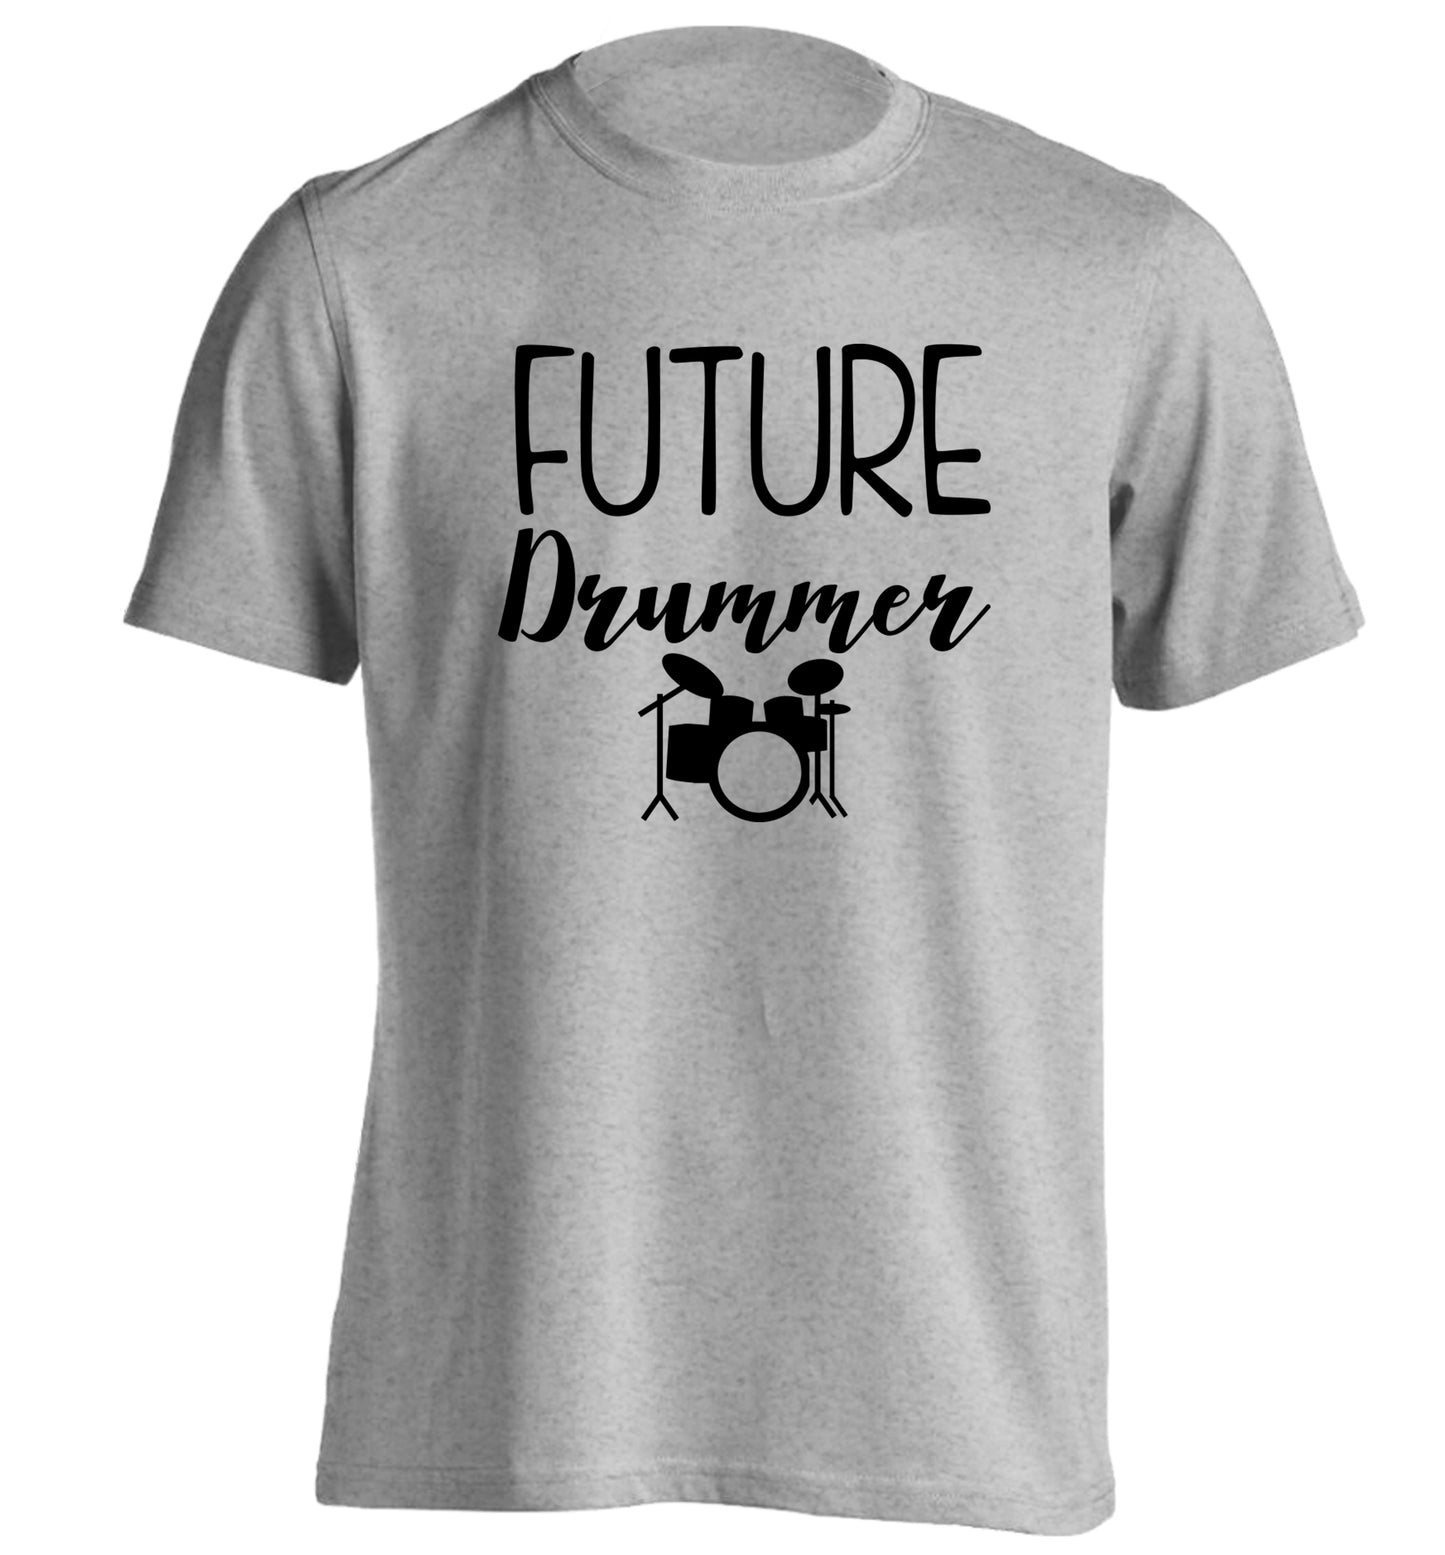 Future drummer adults unisex grey Tshirt 2XL